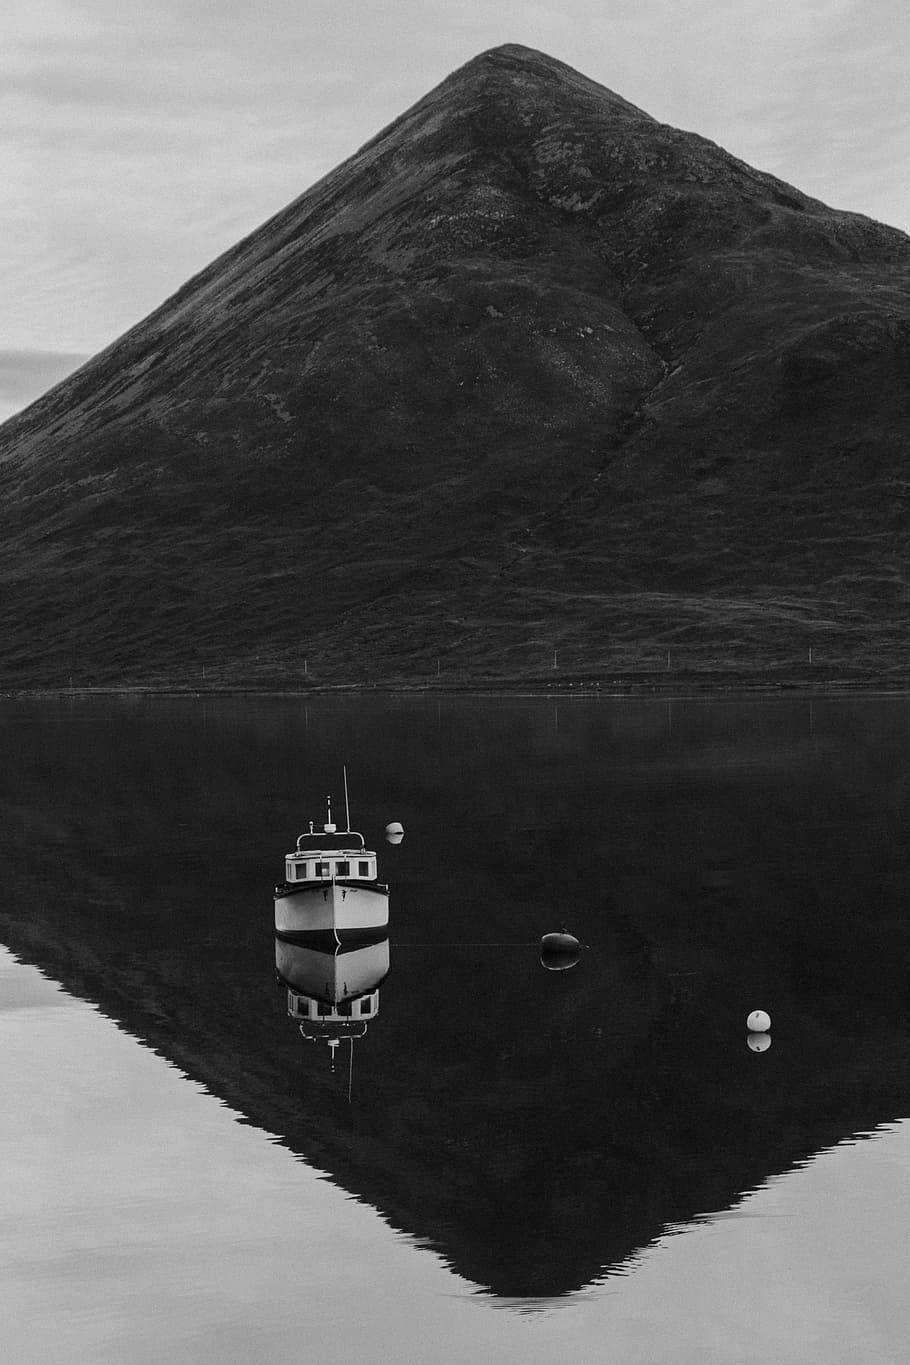 グレースケール写真, 船, 体, 水, 山, ハイランド, 空, 湖, 反射, ボート